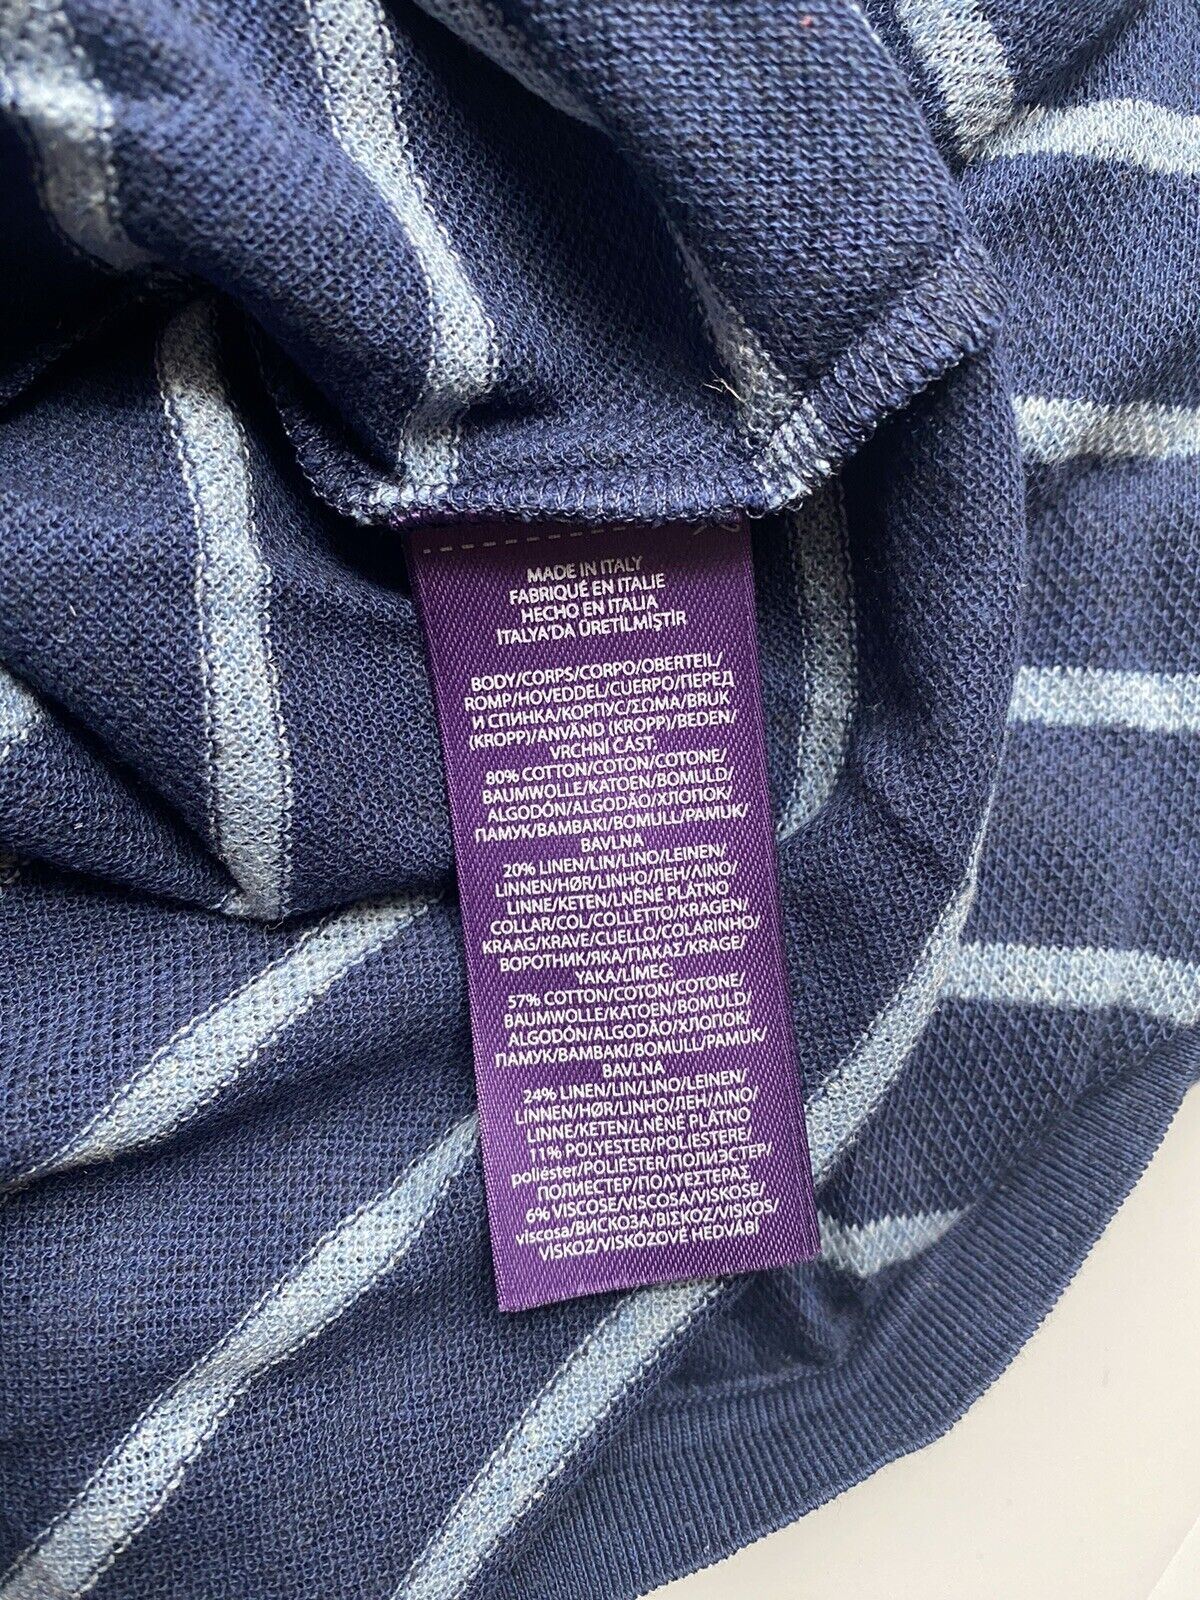 Neu mit Etikett: 395 $ Ralph Lauren Purple Label Custom Slim Fit Baumwoll-Leinen-Poloshirt 2XL